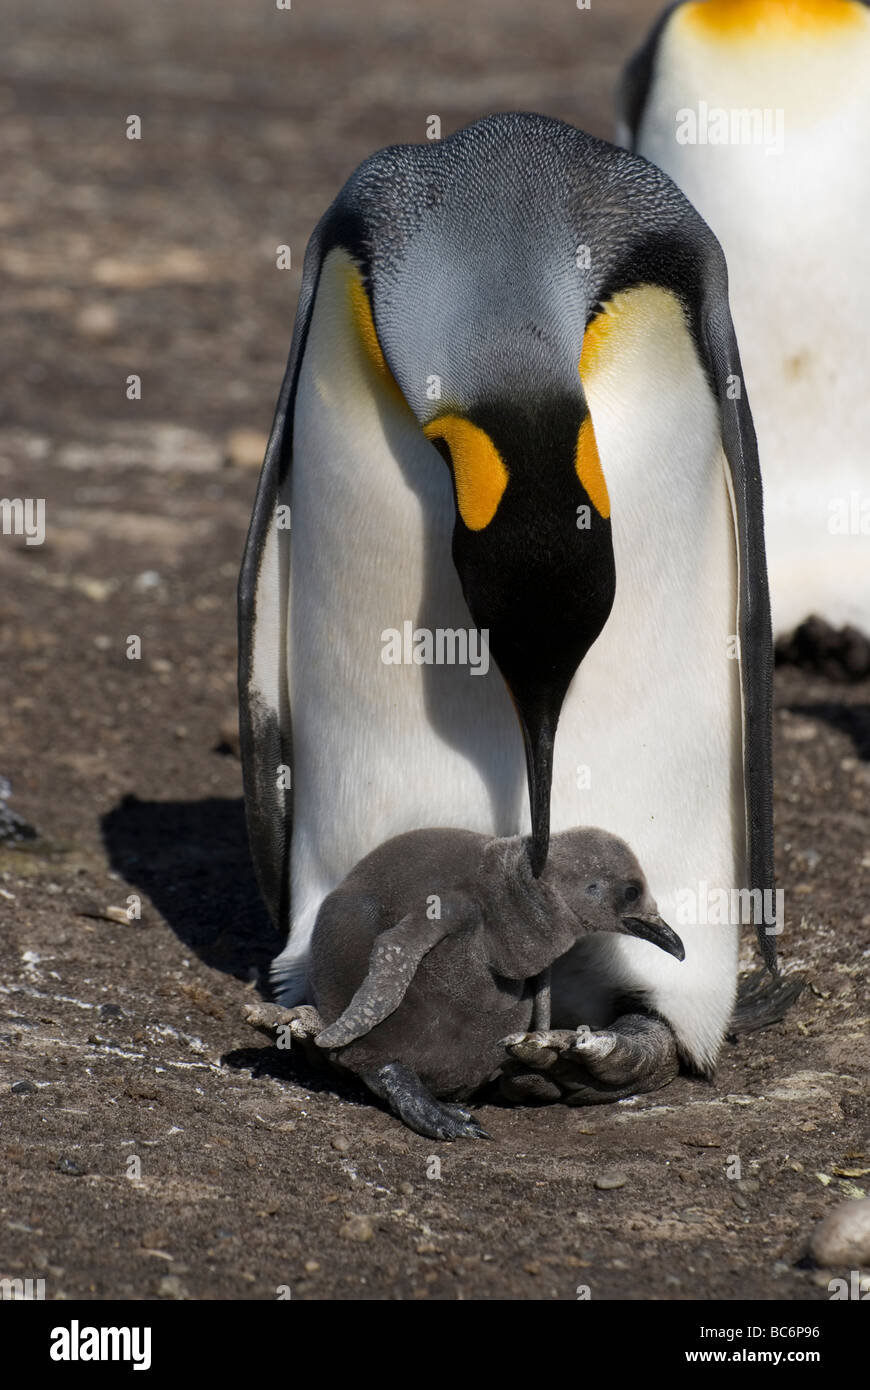 Pingüinos rey, Aptenodytes patagonicus - garbanzos en los pies de su padre que acicalarse las plumas del pollo Foto de stock